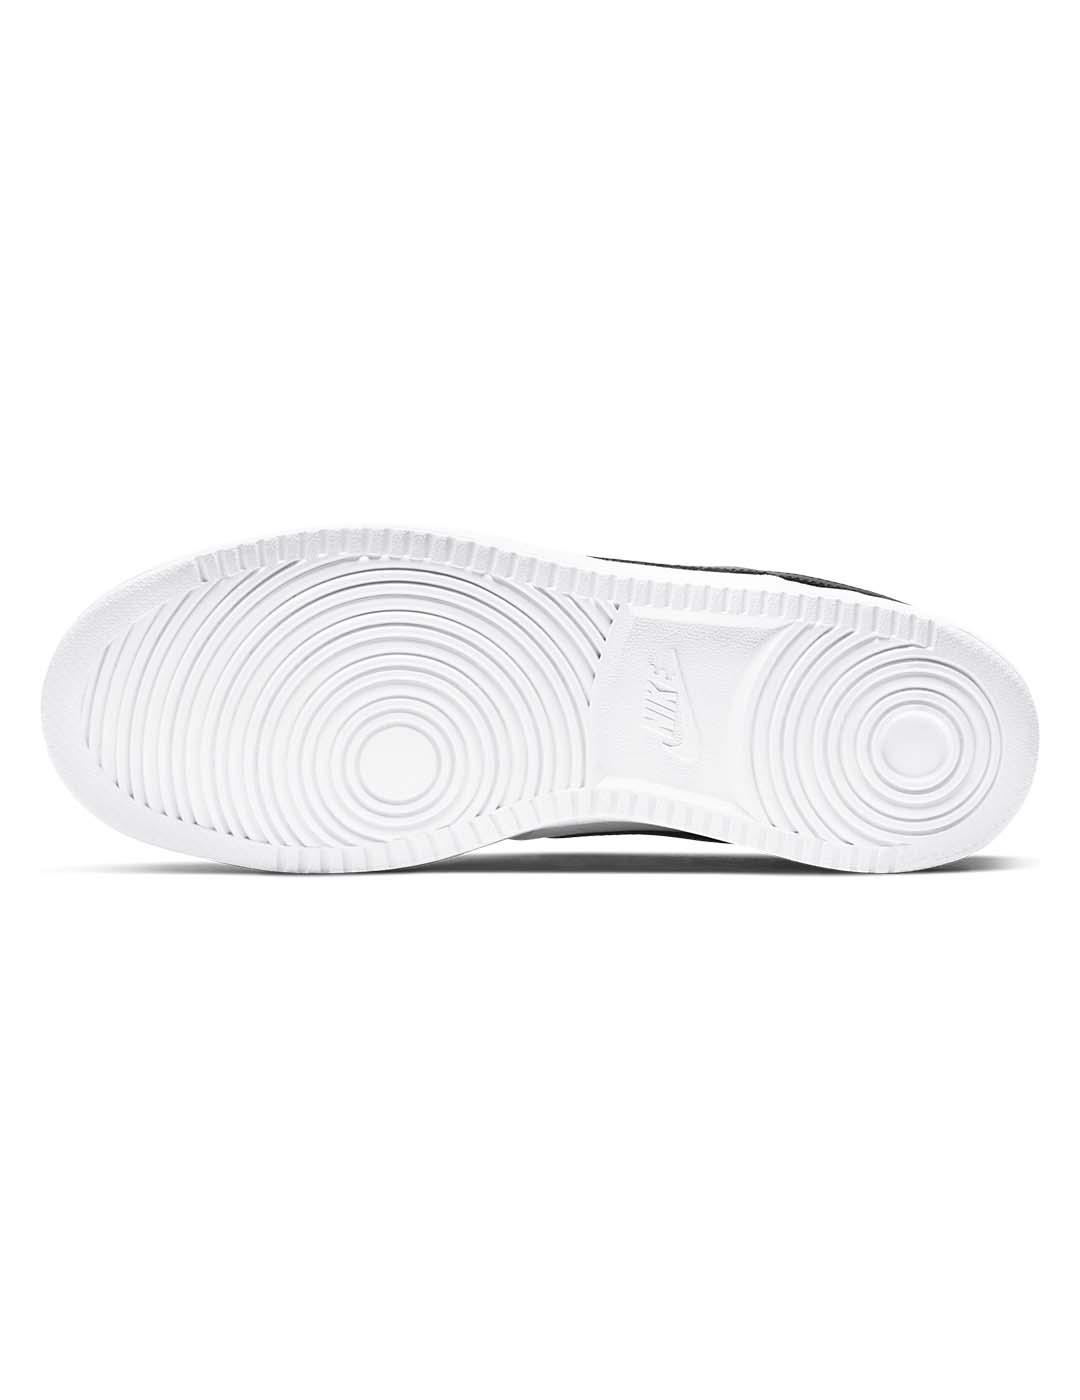 Zapatilla Nike Court Vision LO blanco negro